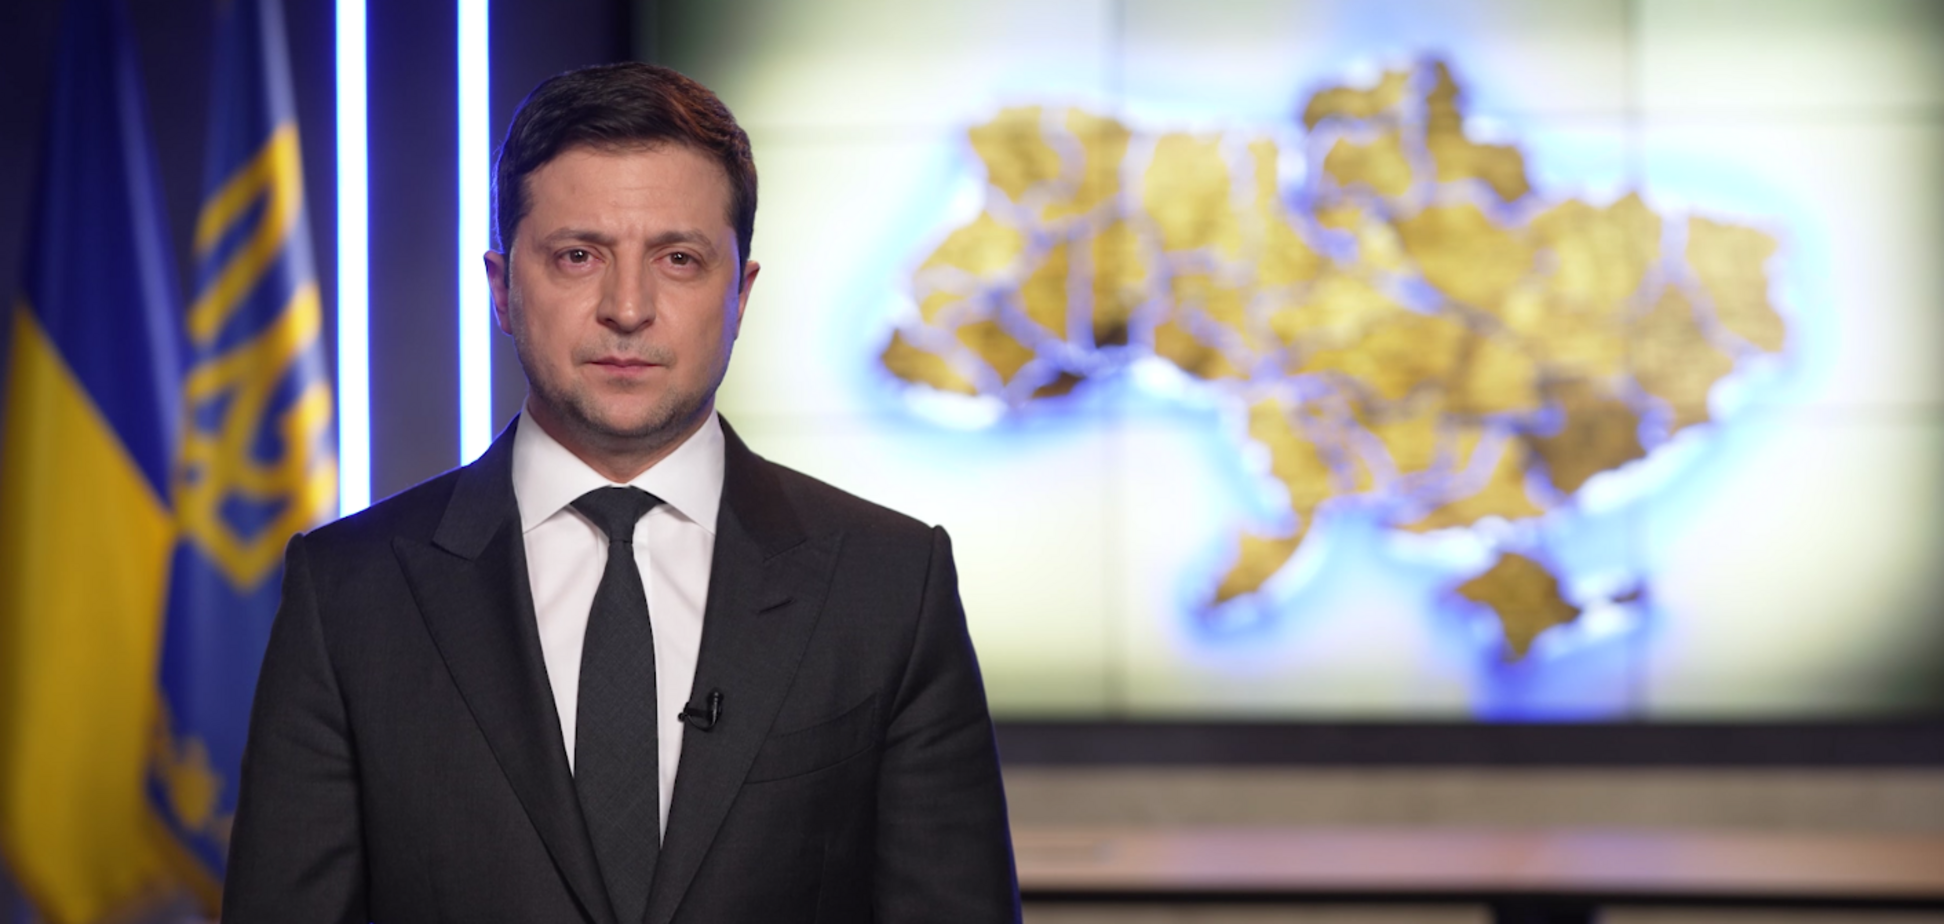 Світові ЗМІ здивувала тверда позиція українського лідера